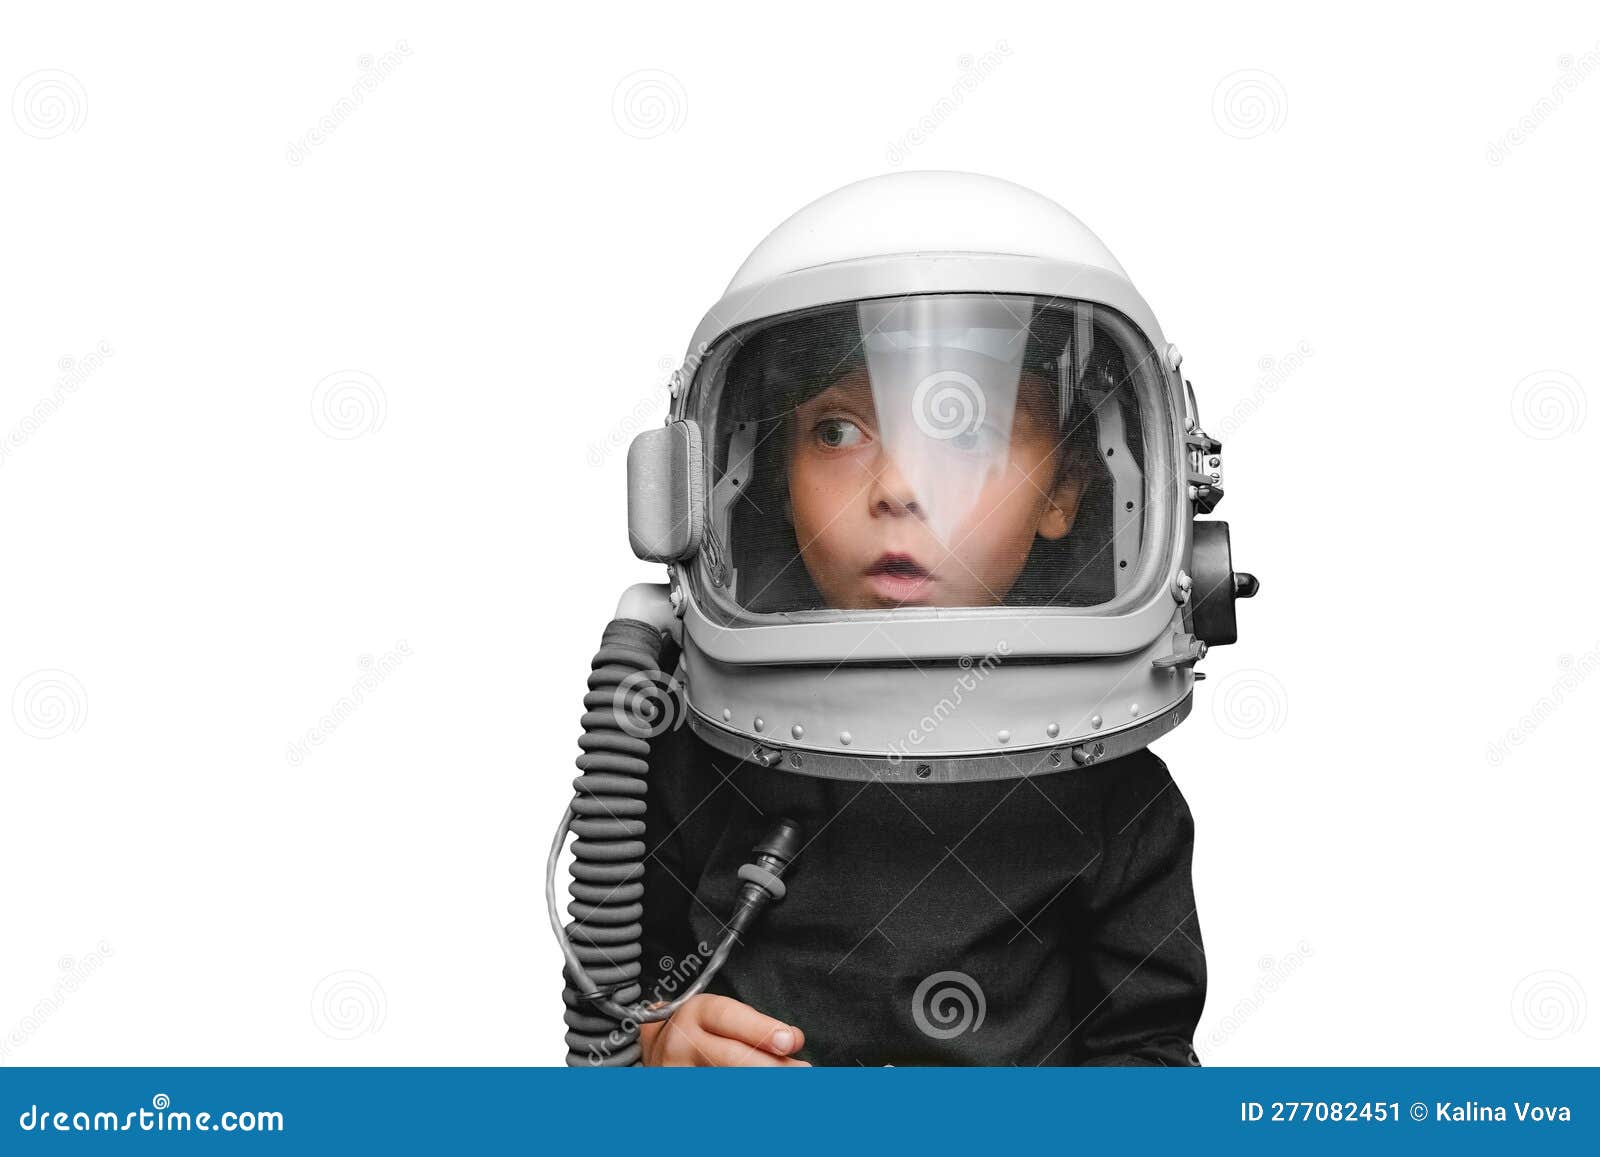 Un Niño Pequeño Se Imagina a Sí Mismo Como Un Astronauta En Un Casco De  Astronautas. Imagen de archivo - Imagen de cabritos, cristales: 277082451